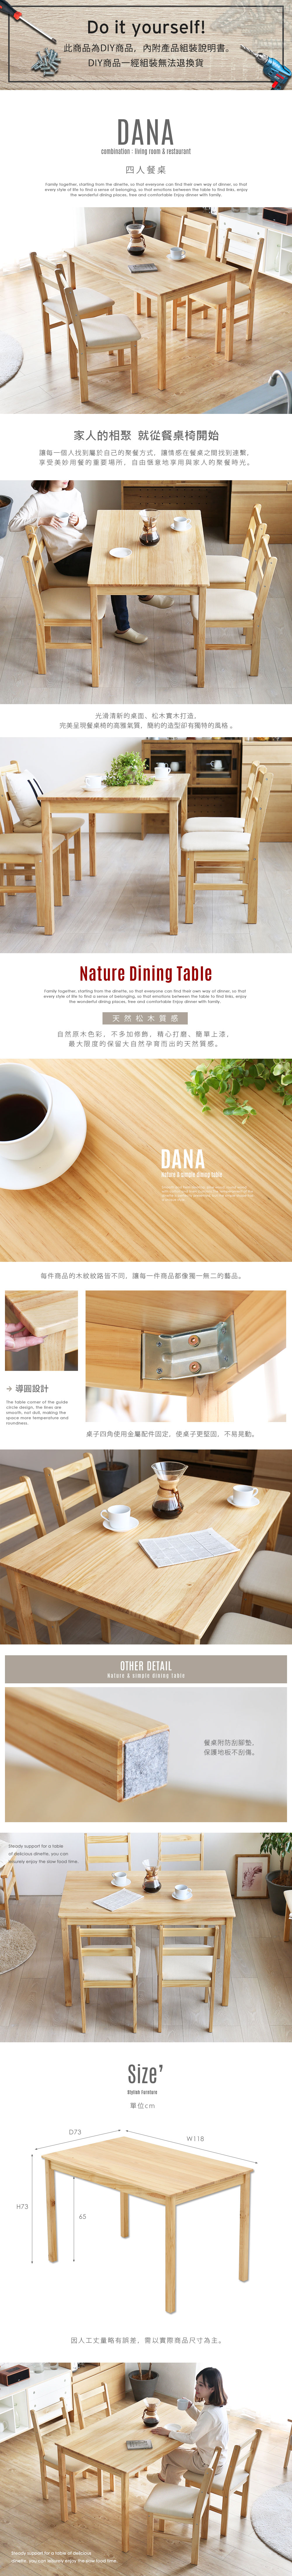 餐桌 MODERN DECO黛納日式木作長型餐桌/DIY自行組裝